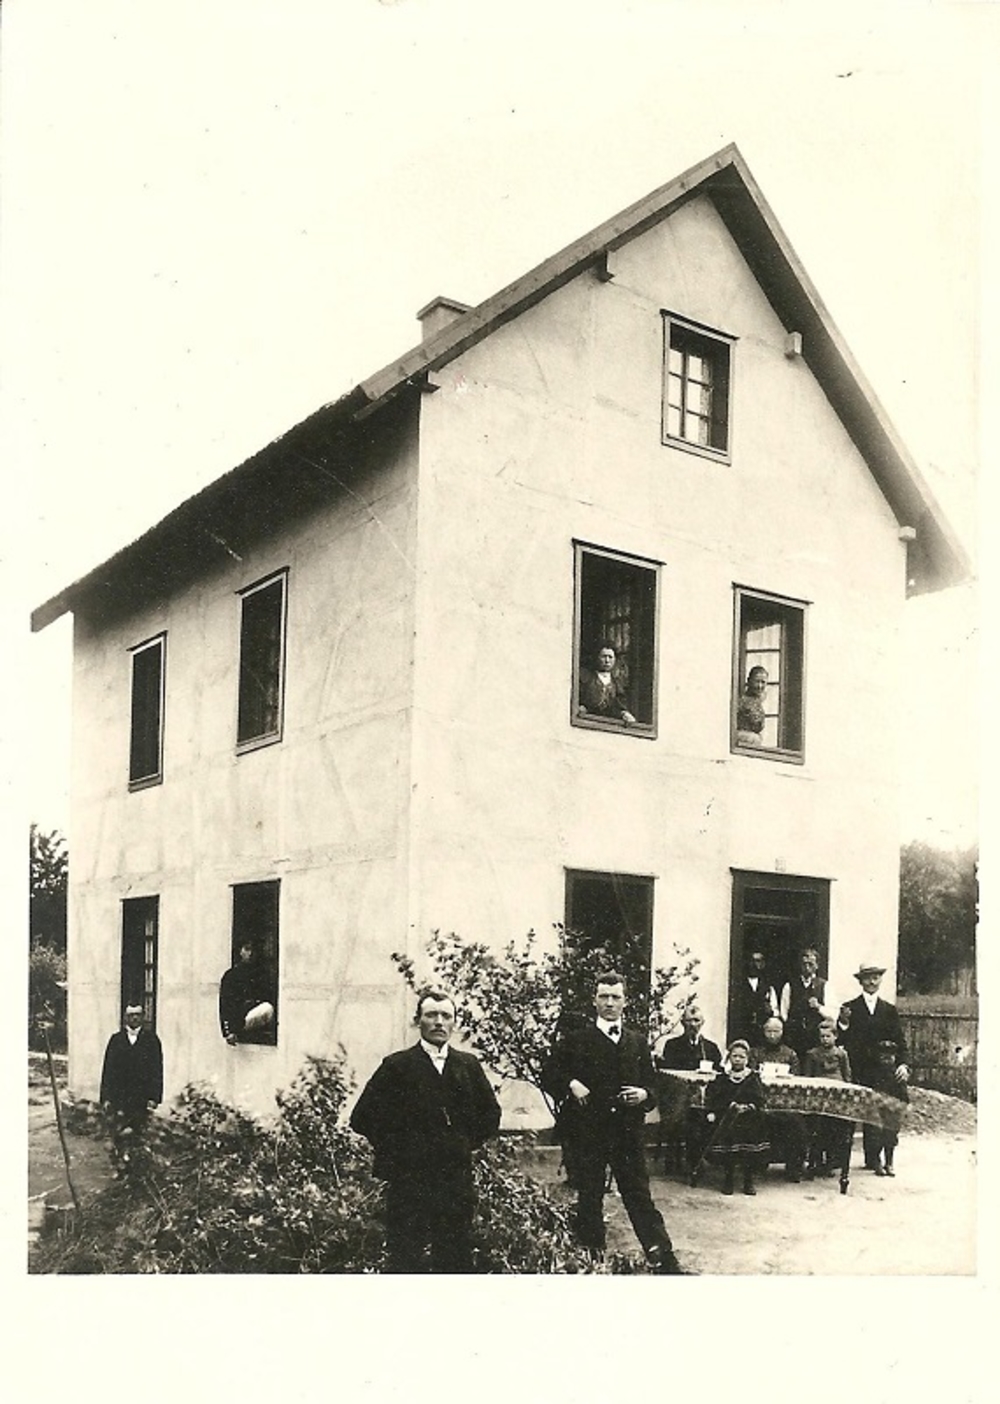 Aufnahme 1900 - 1930. Mann mit Strohut ist wahrscheinlich Johann Müller. Fachwerk ist unter dem Anstrich erkennbar.